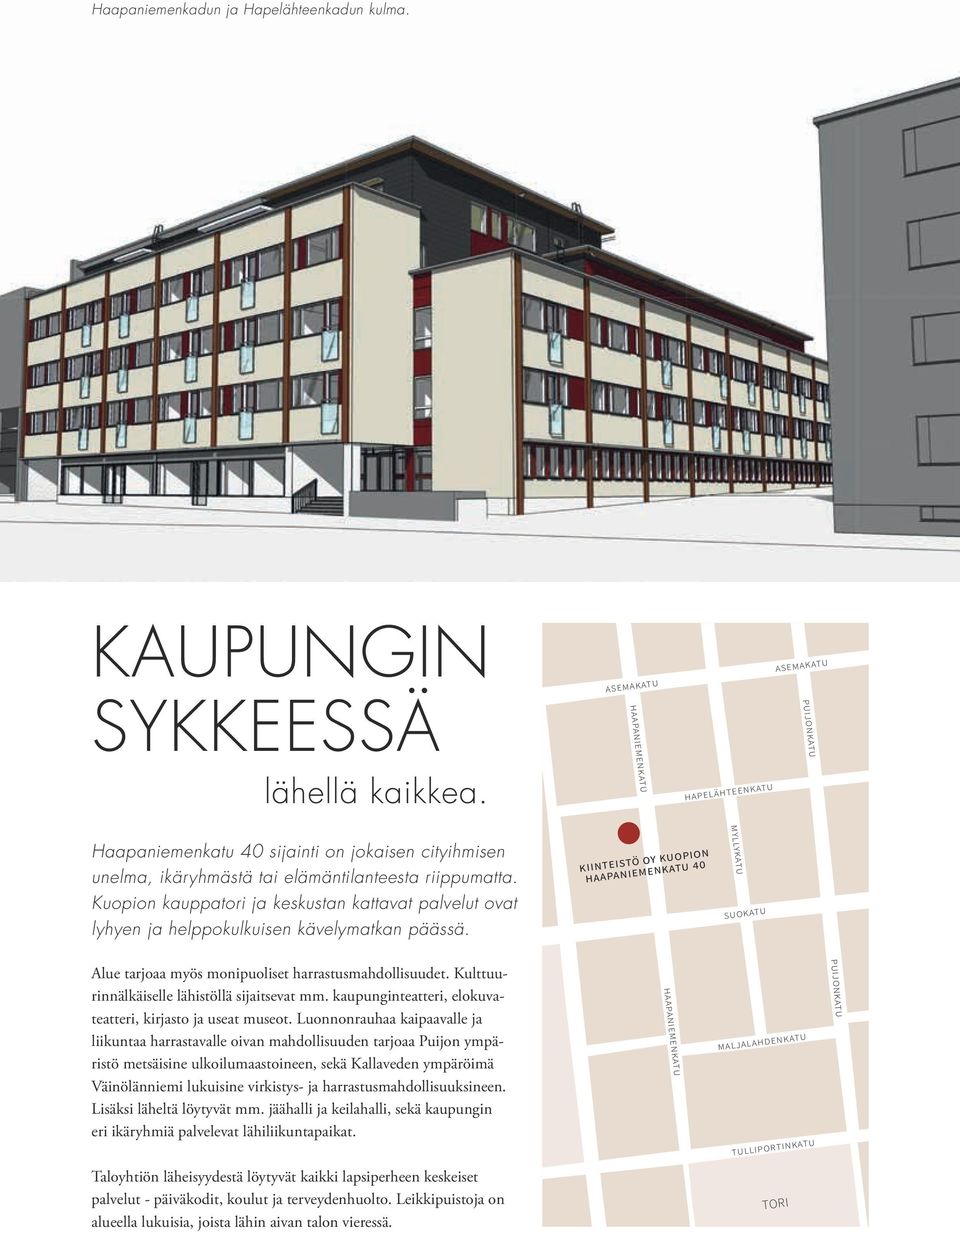 Kuopion kauppatori ja keskustan kattavat palvelut ovat lyhyen ja helppokulkuisen kävelymatkan päässä.